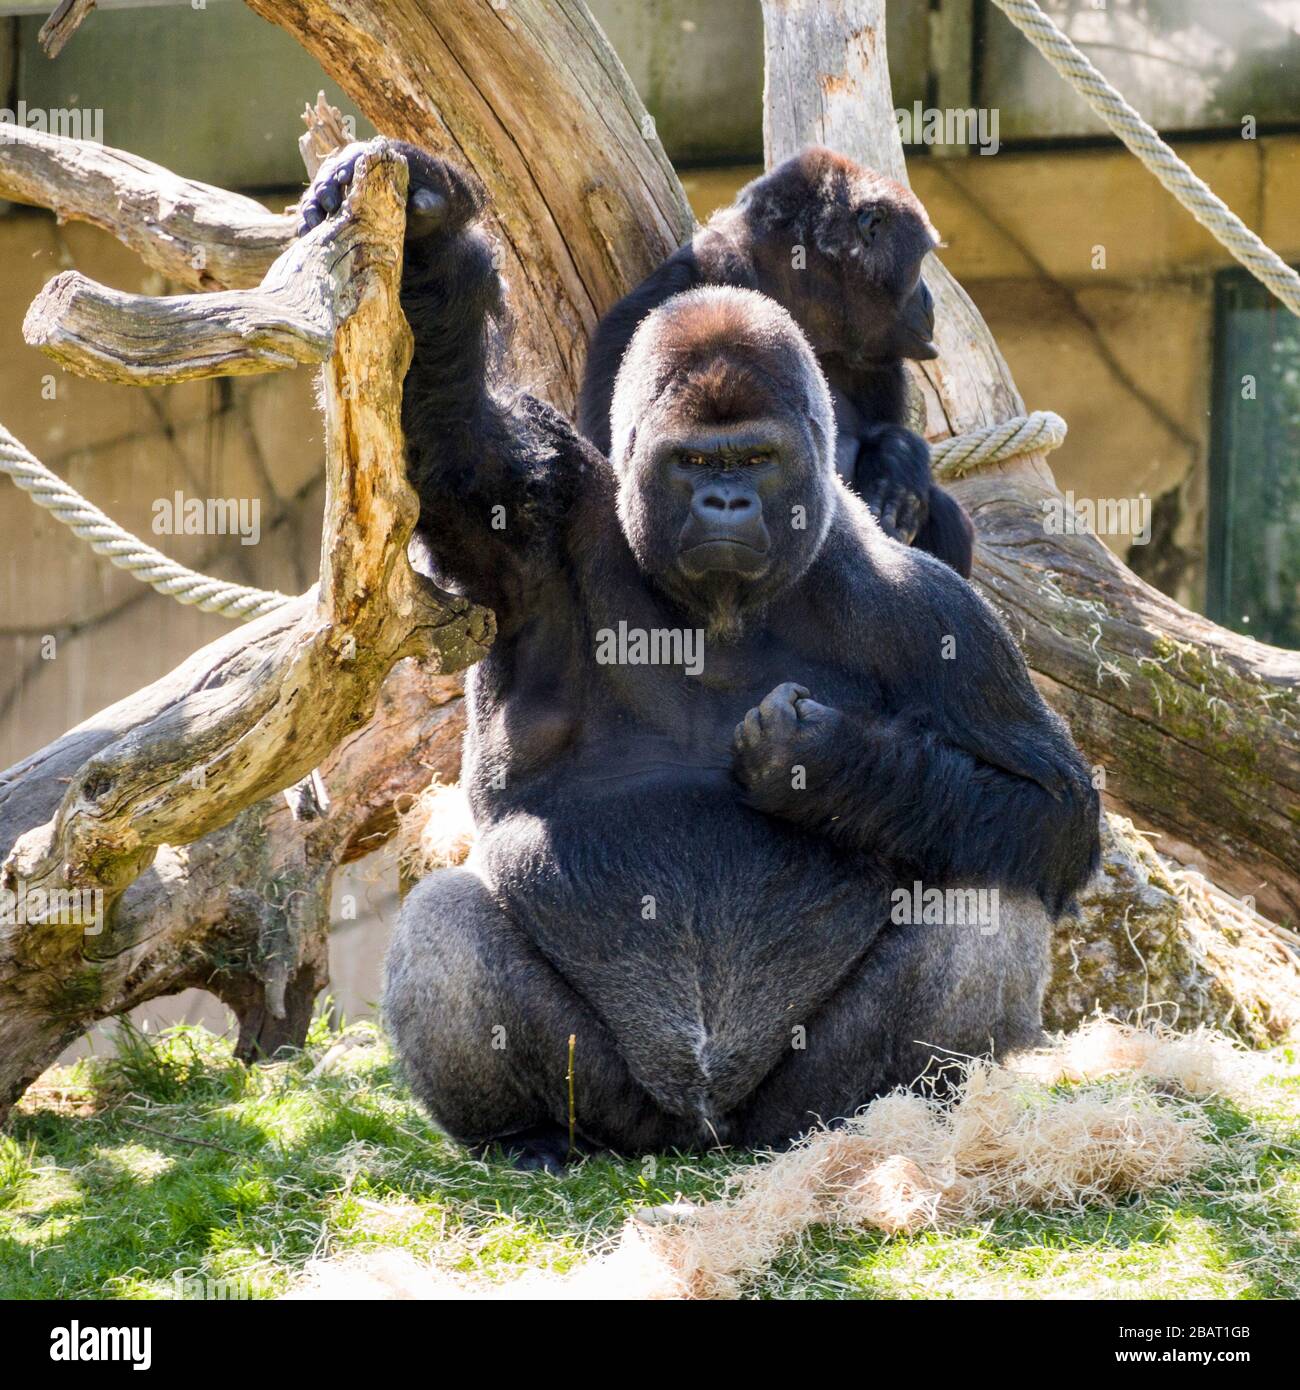 Postura desafiante: Un gran gorila maduro se clenches un puño contra su corazón y levanta el otro brazo hacia el cielo mientras baja por los espectadores. Foto de stock